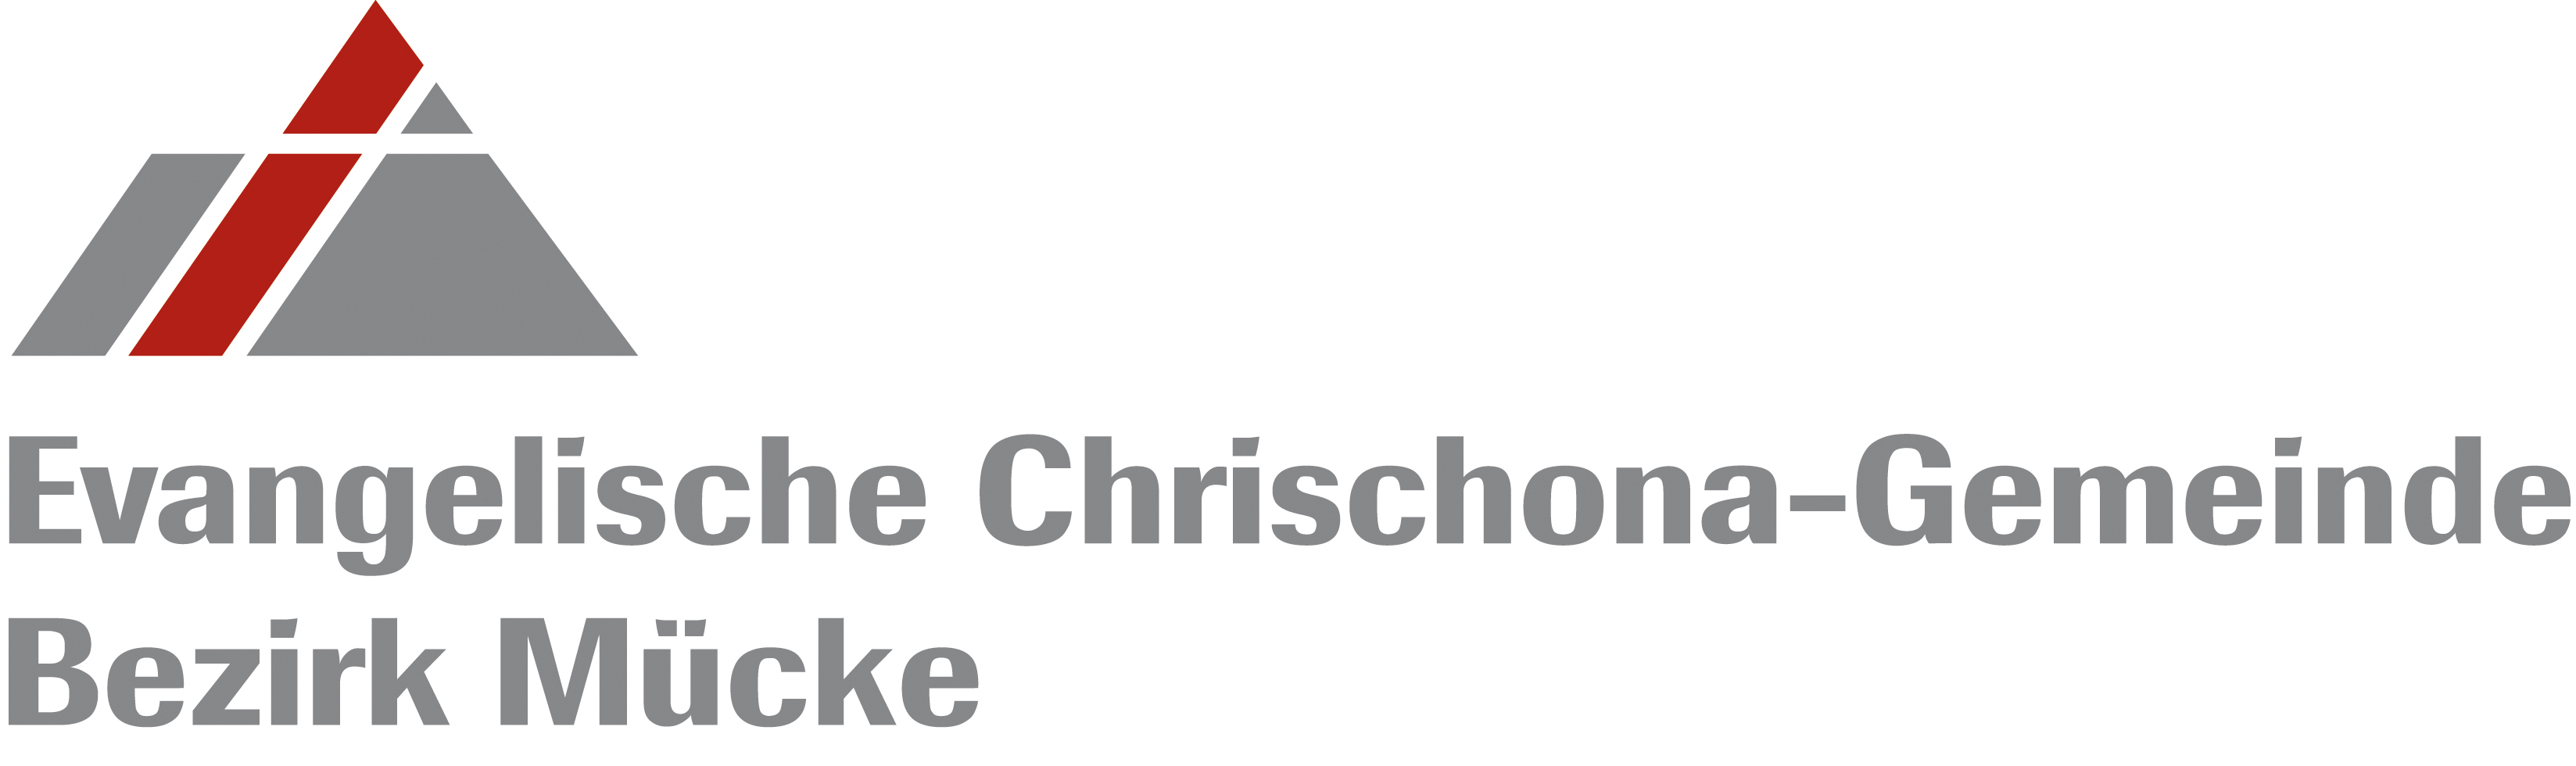 Chrischona-Gemeinde Bezirk Mücke